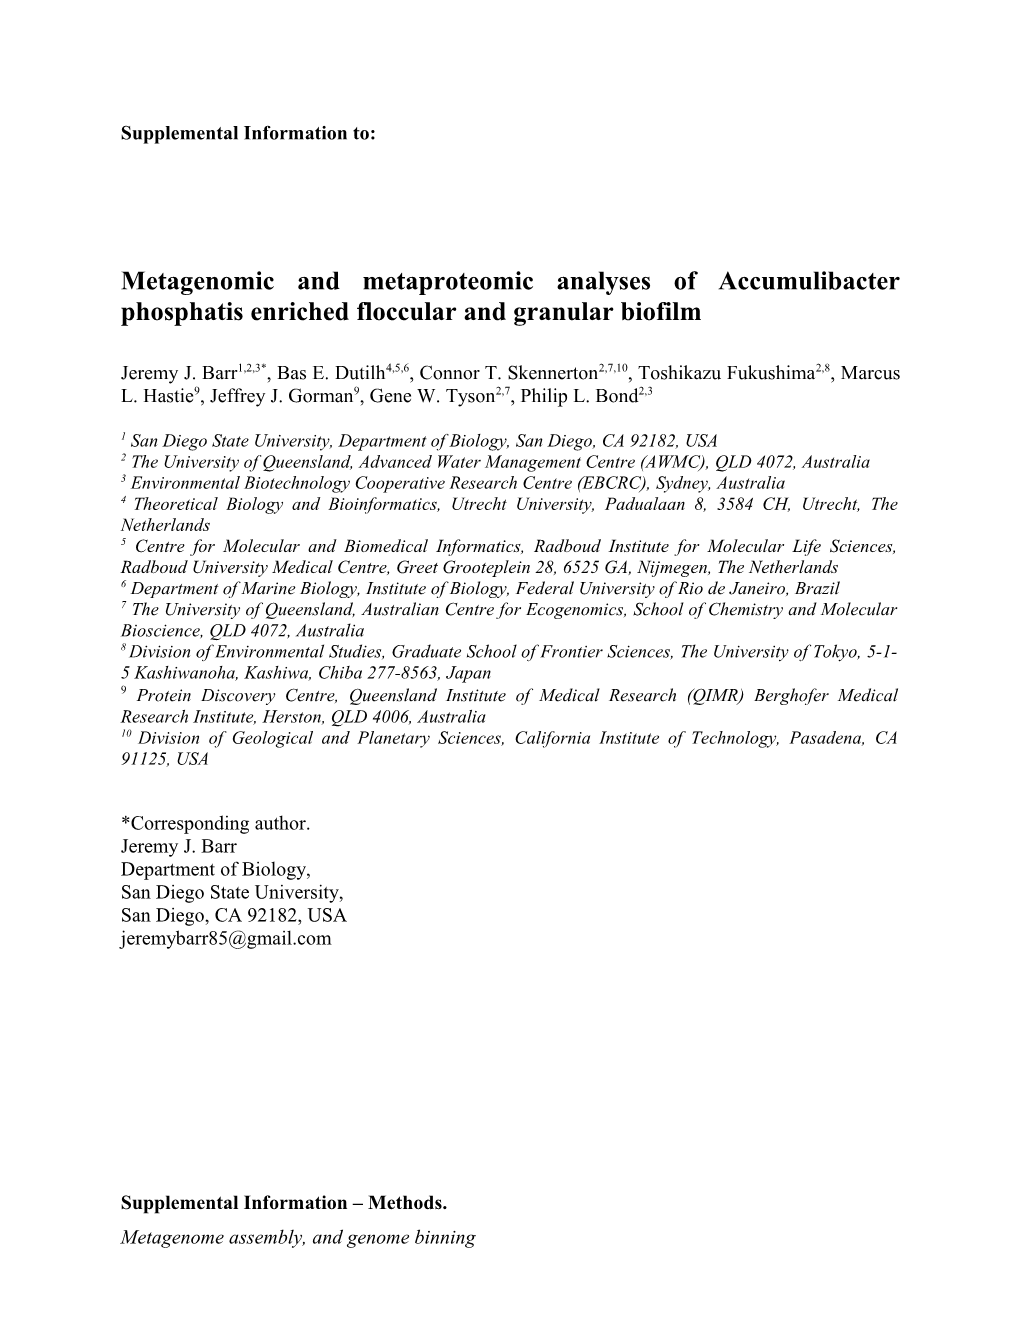 Metagenomic and Metaproteomic Analyses of Accumulibacter Phosphatis Enriched Floccular